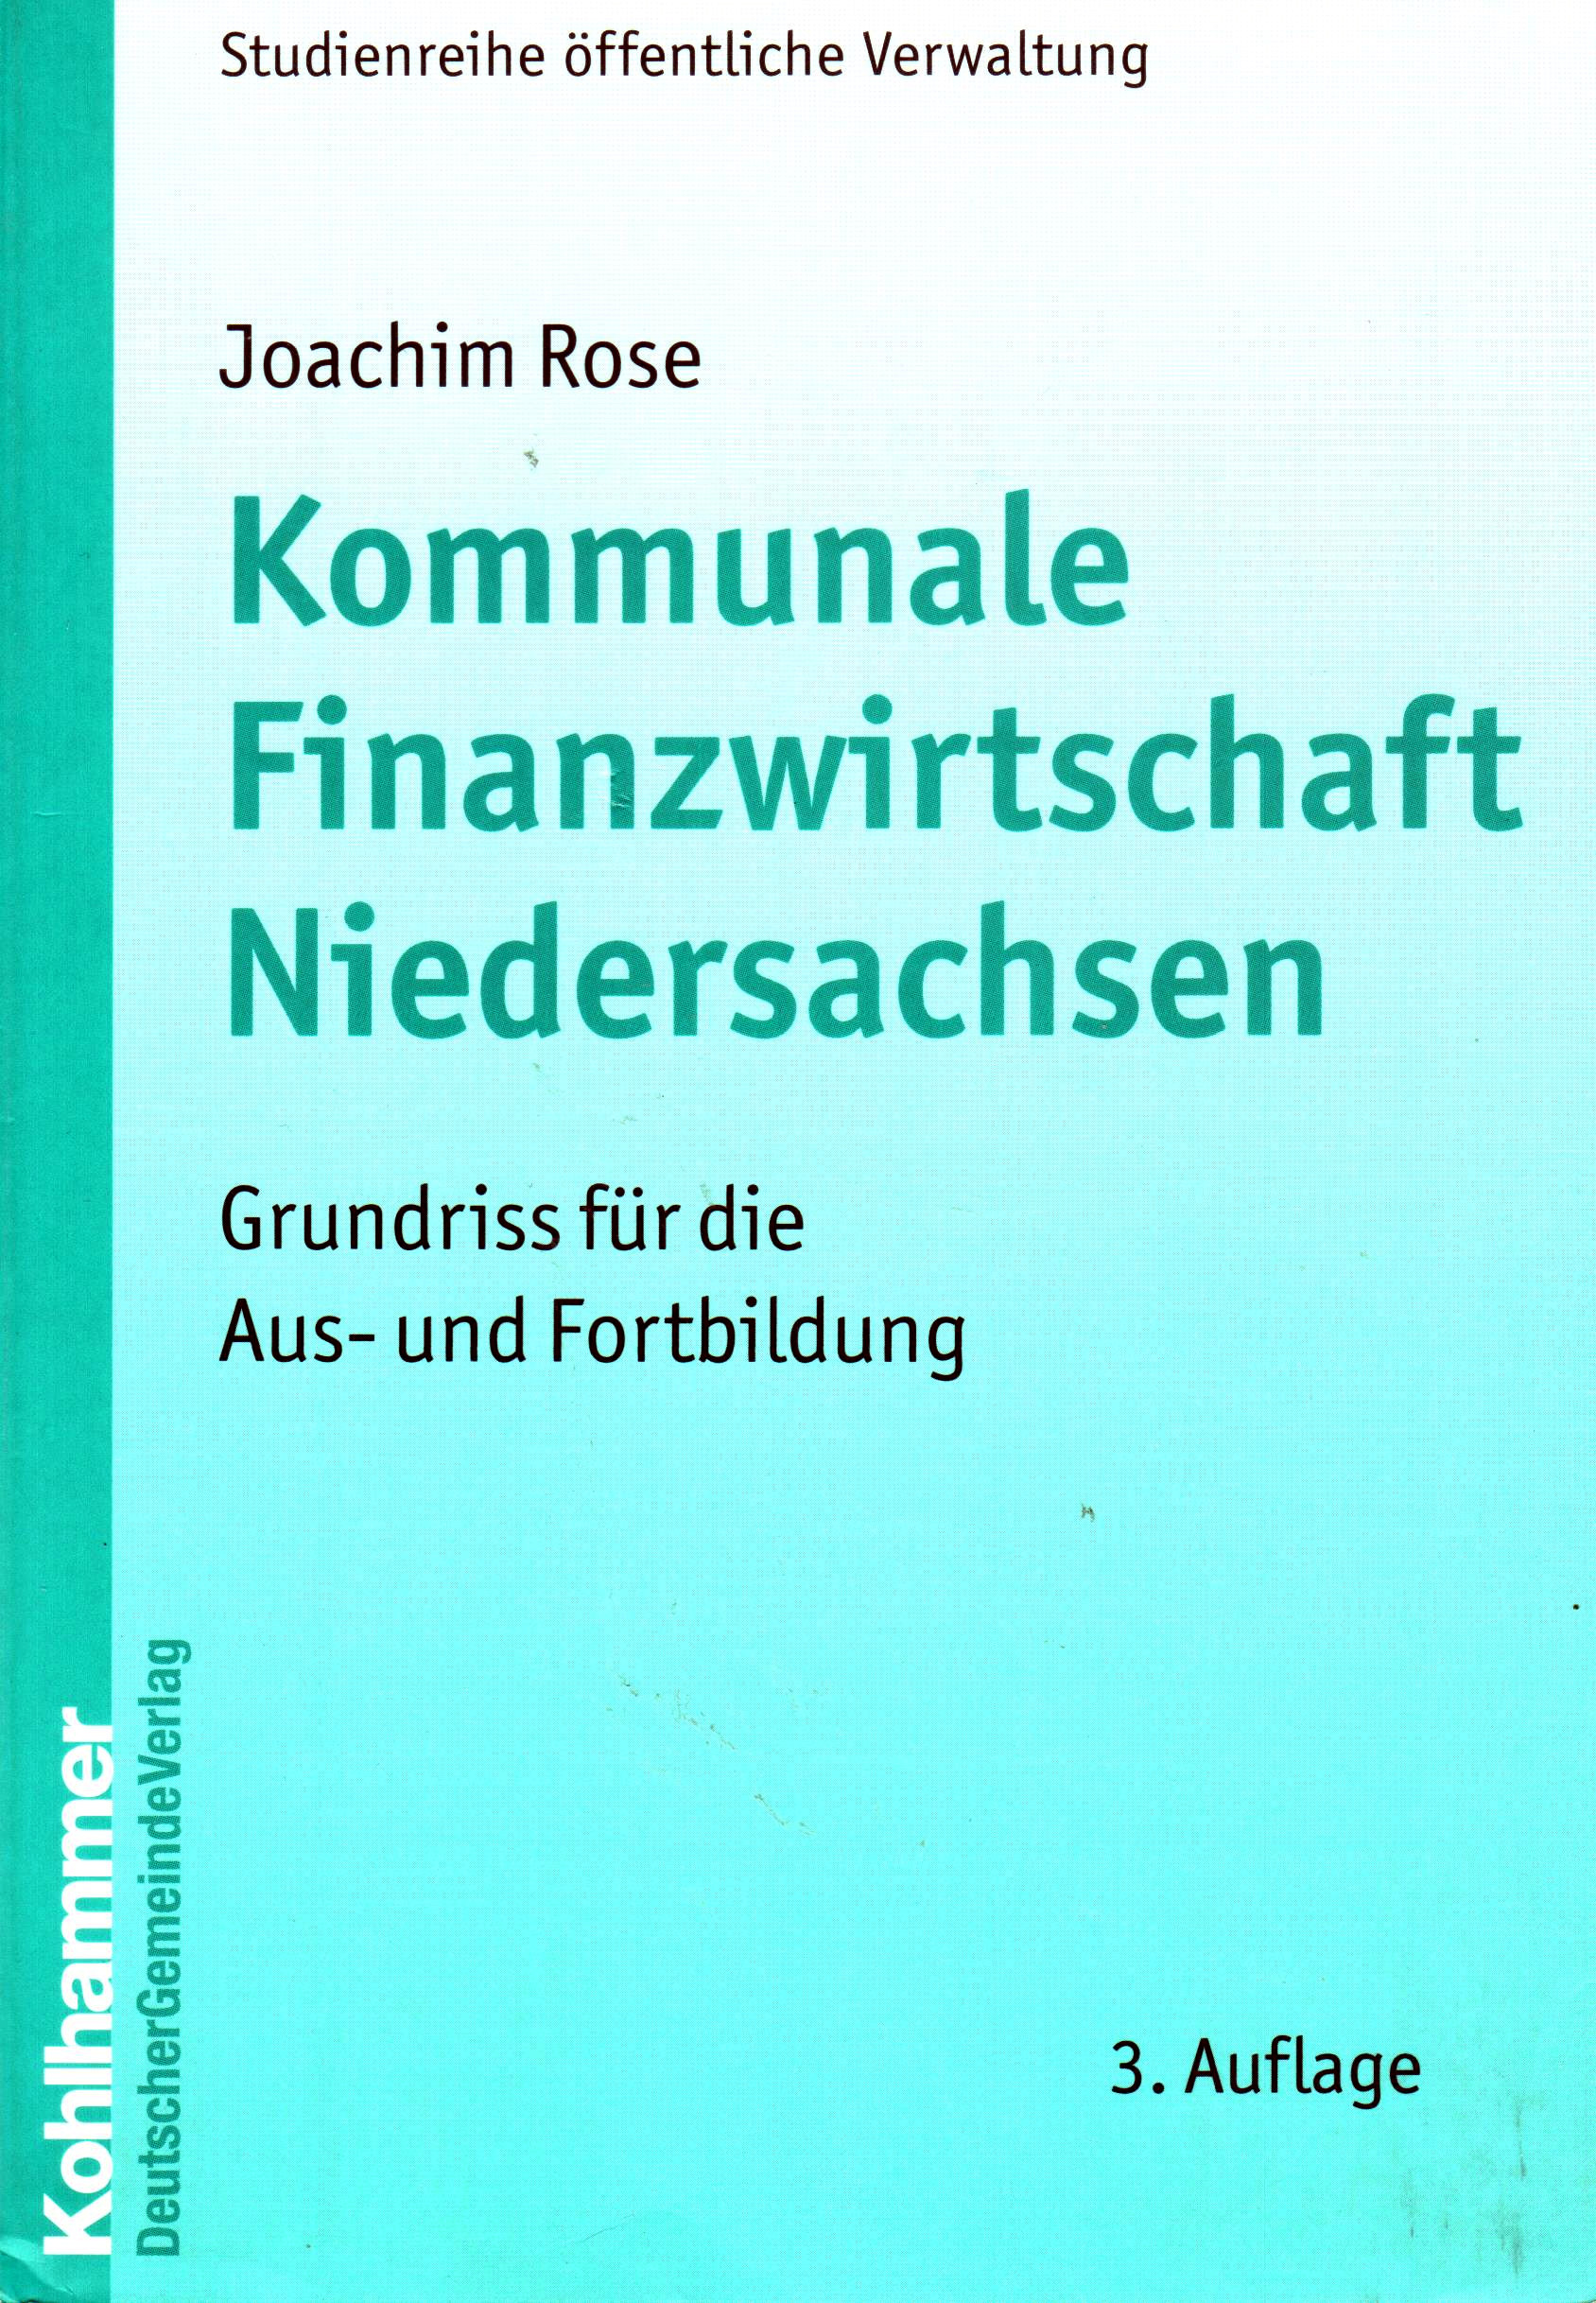 Kommunale Finanzwirtschaft Niedersachsen – Grundriss für die Aus- und Fortbildung